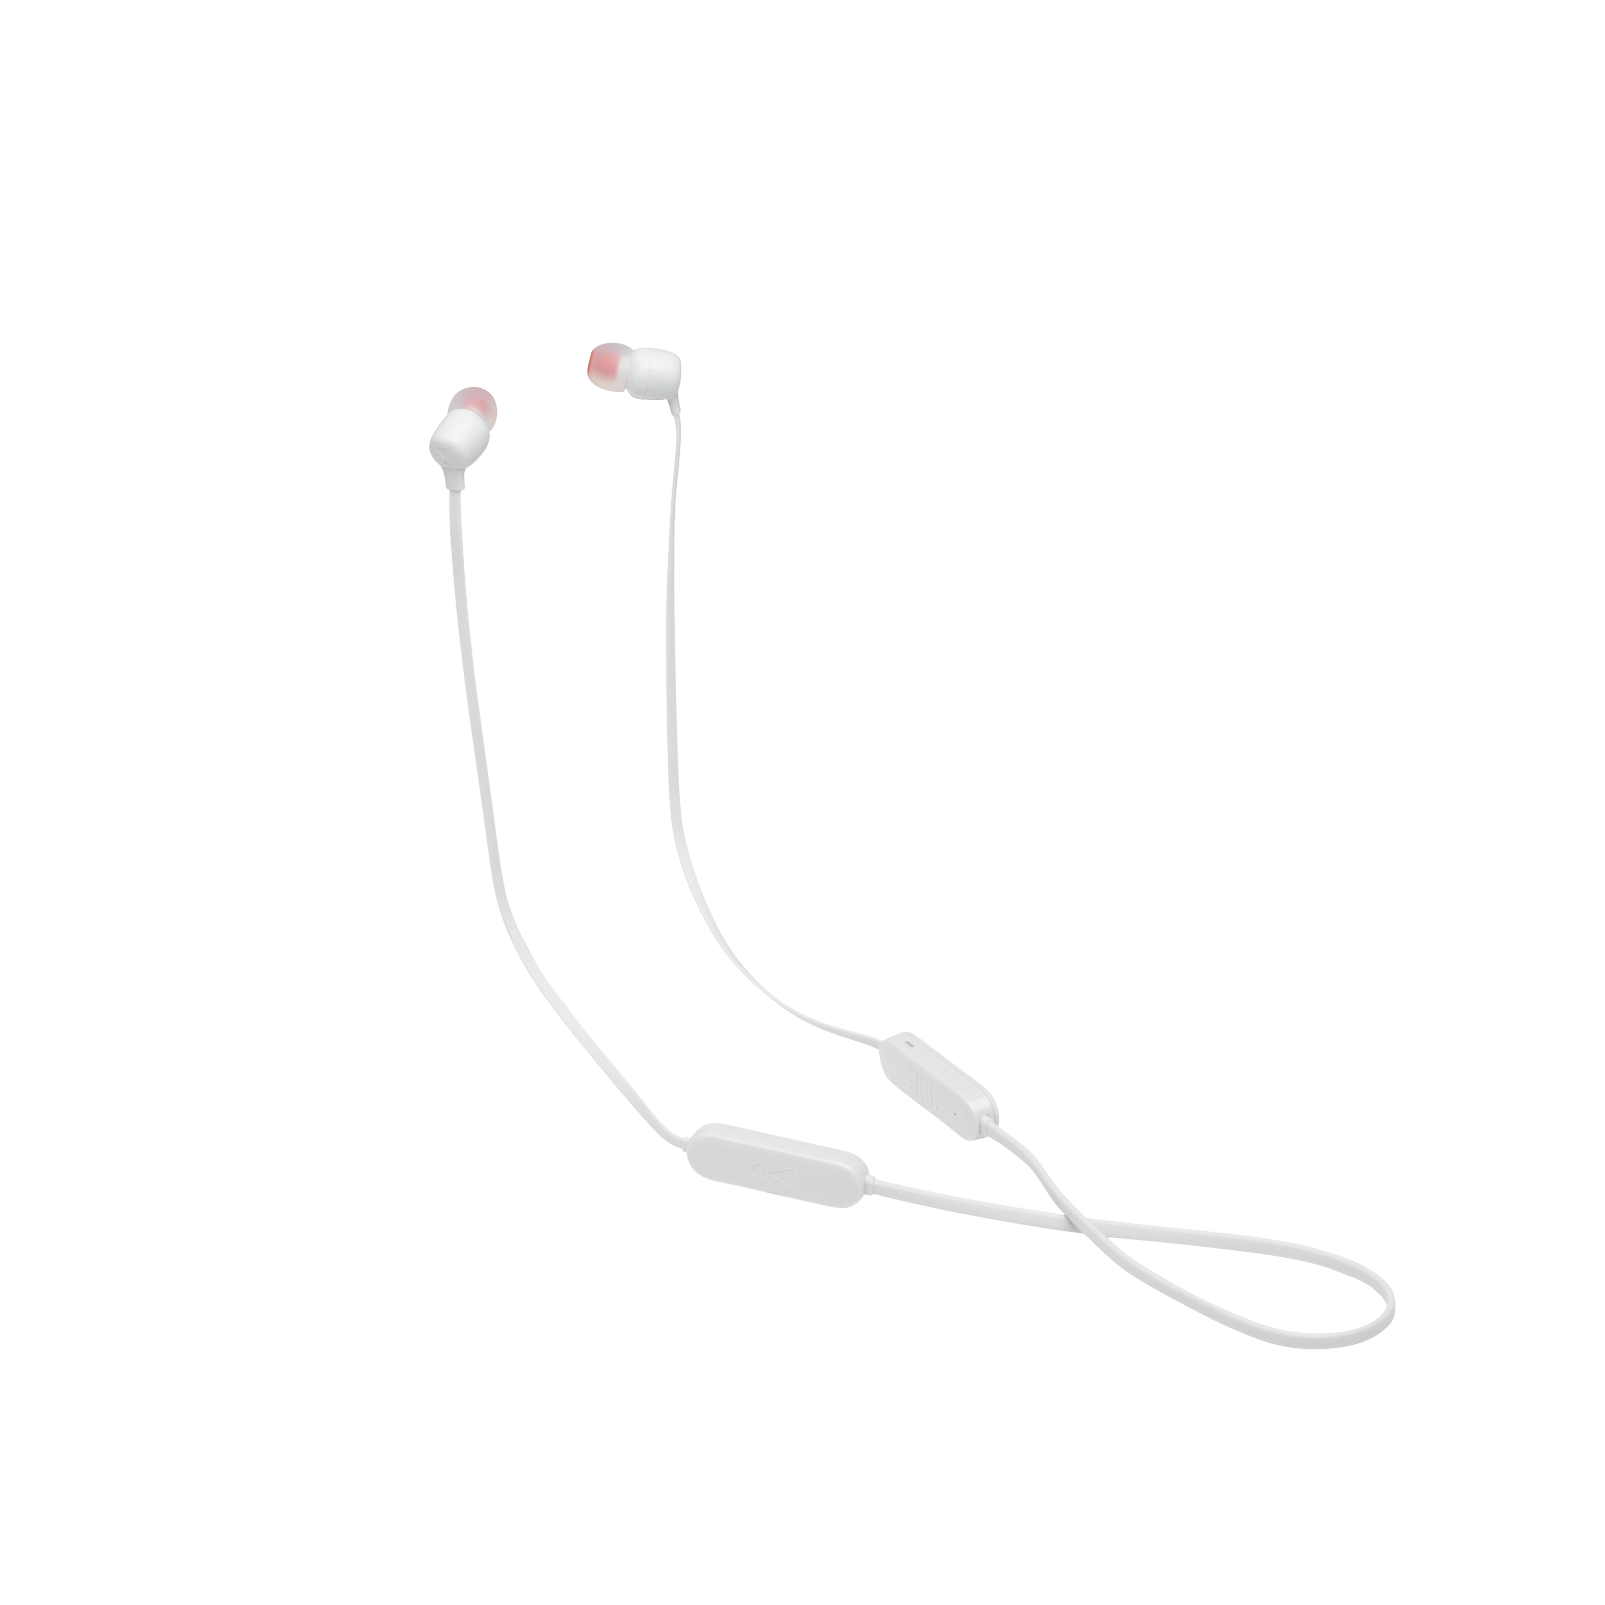 JBL Tune 125BT - White - Wireless in-ear headphones - Detailshot 6